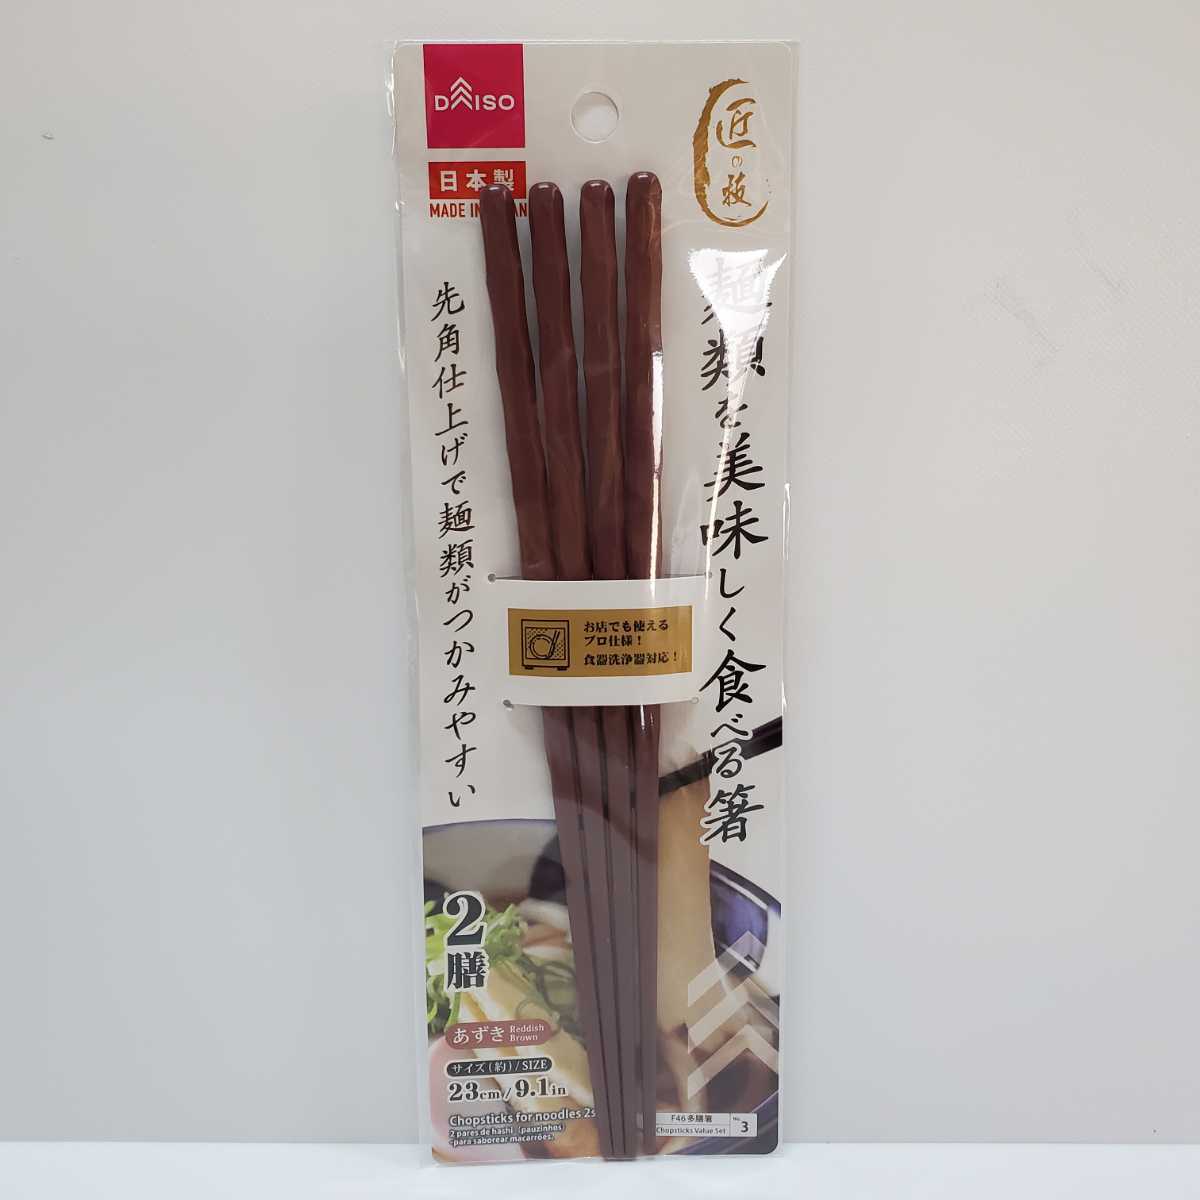 日本製 箸 CHOPSTICK 黒色 茶色 深緑色 3set DAISO ダイソー 和食 日本